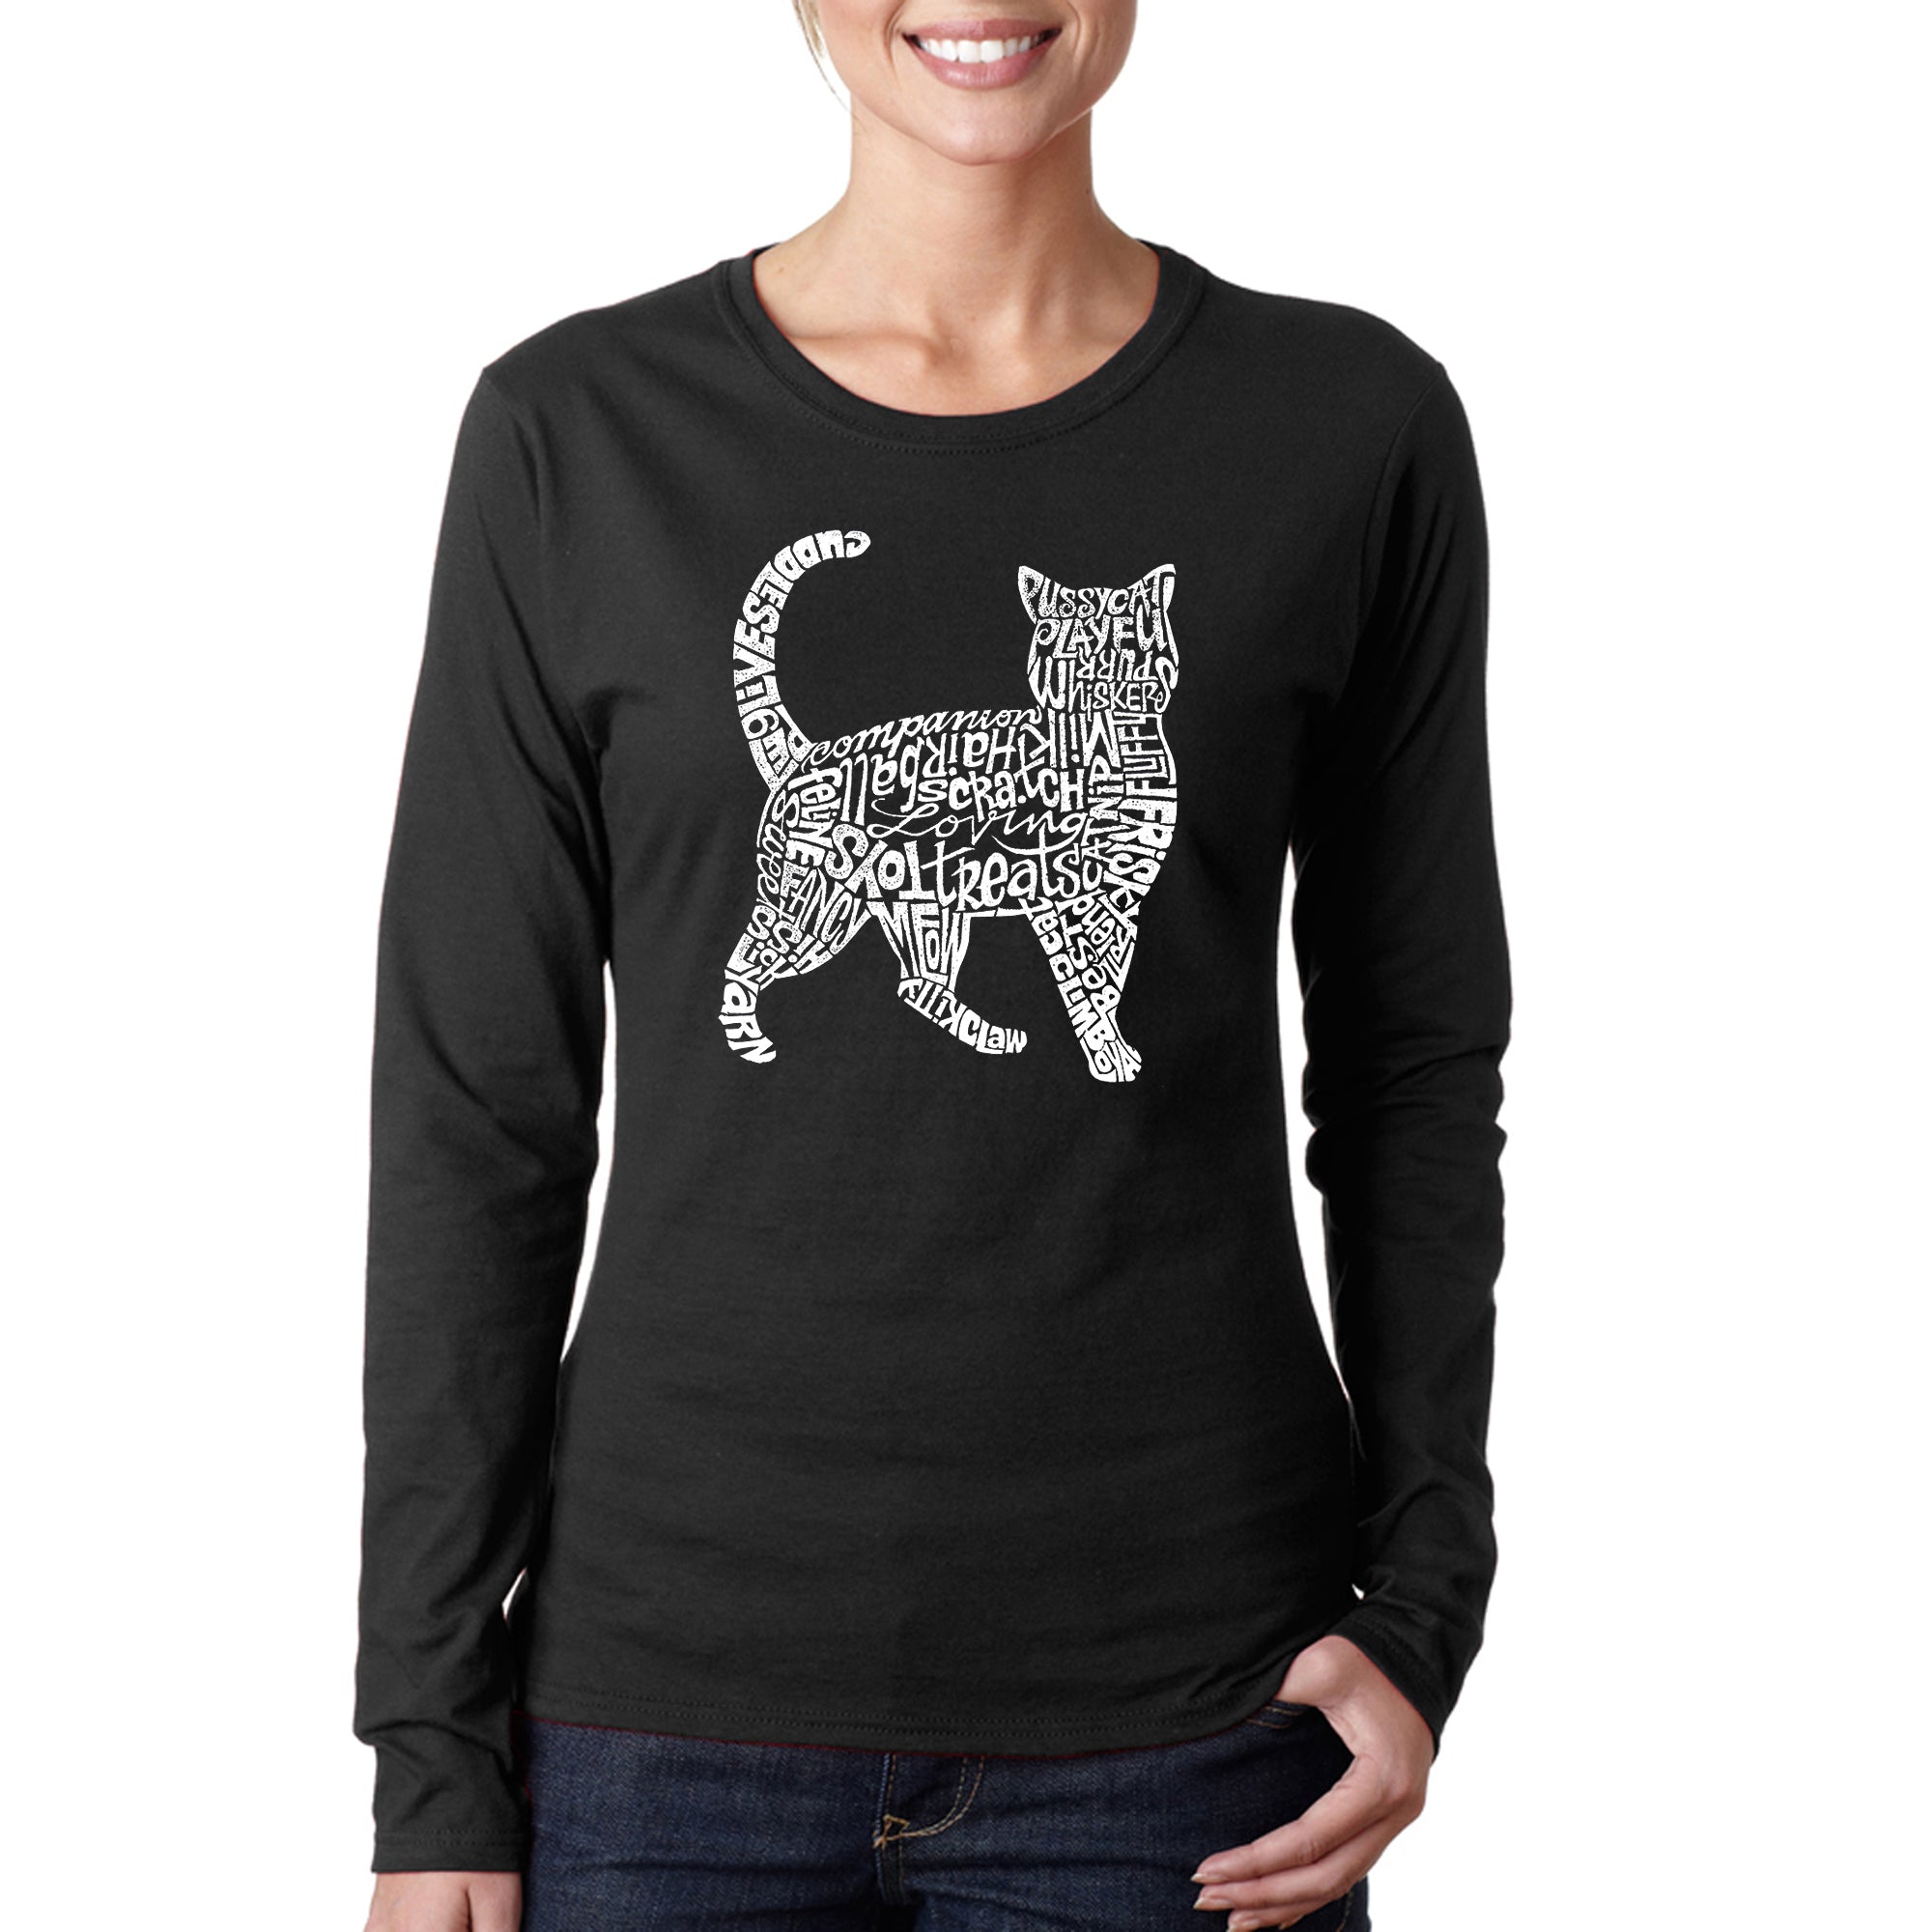 Cat - Women's Word Art Long Sleeve T-Shirt - Pink - Small